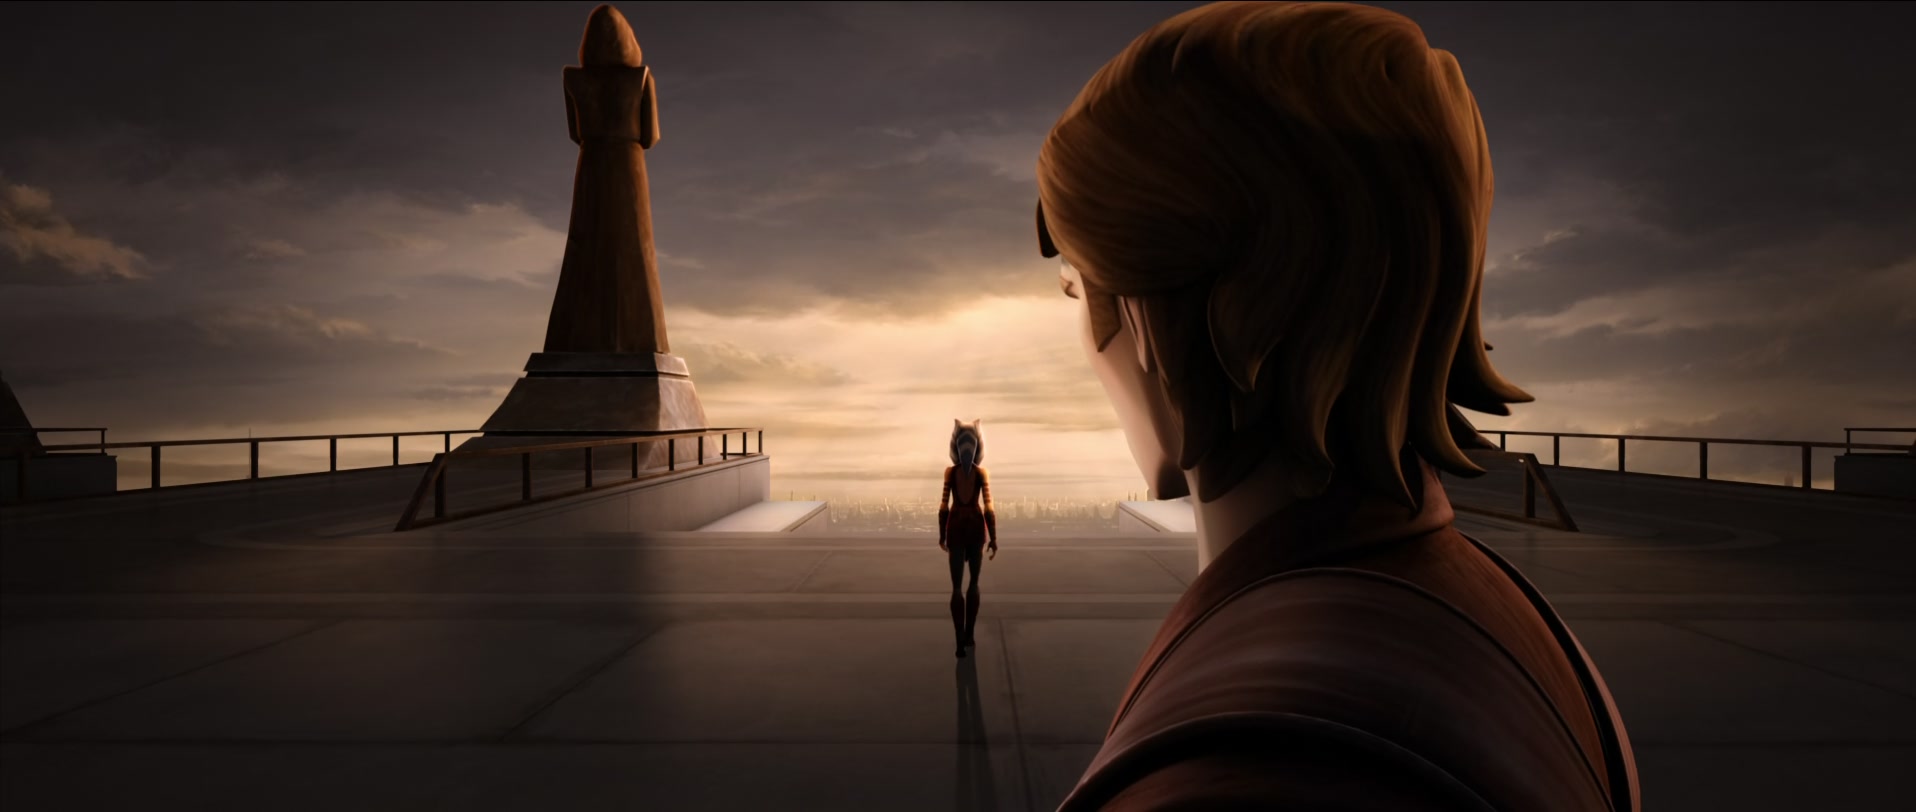 Ahsoka viene tradita e lascia l'Ordine Jedi; da ora in poi seguirà una sua strada, lontana dai rigidi dogmi dell'Ordine